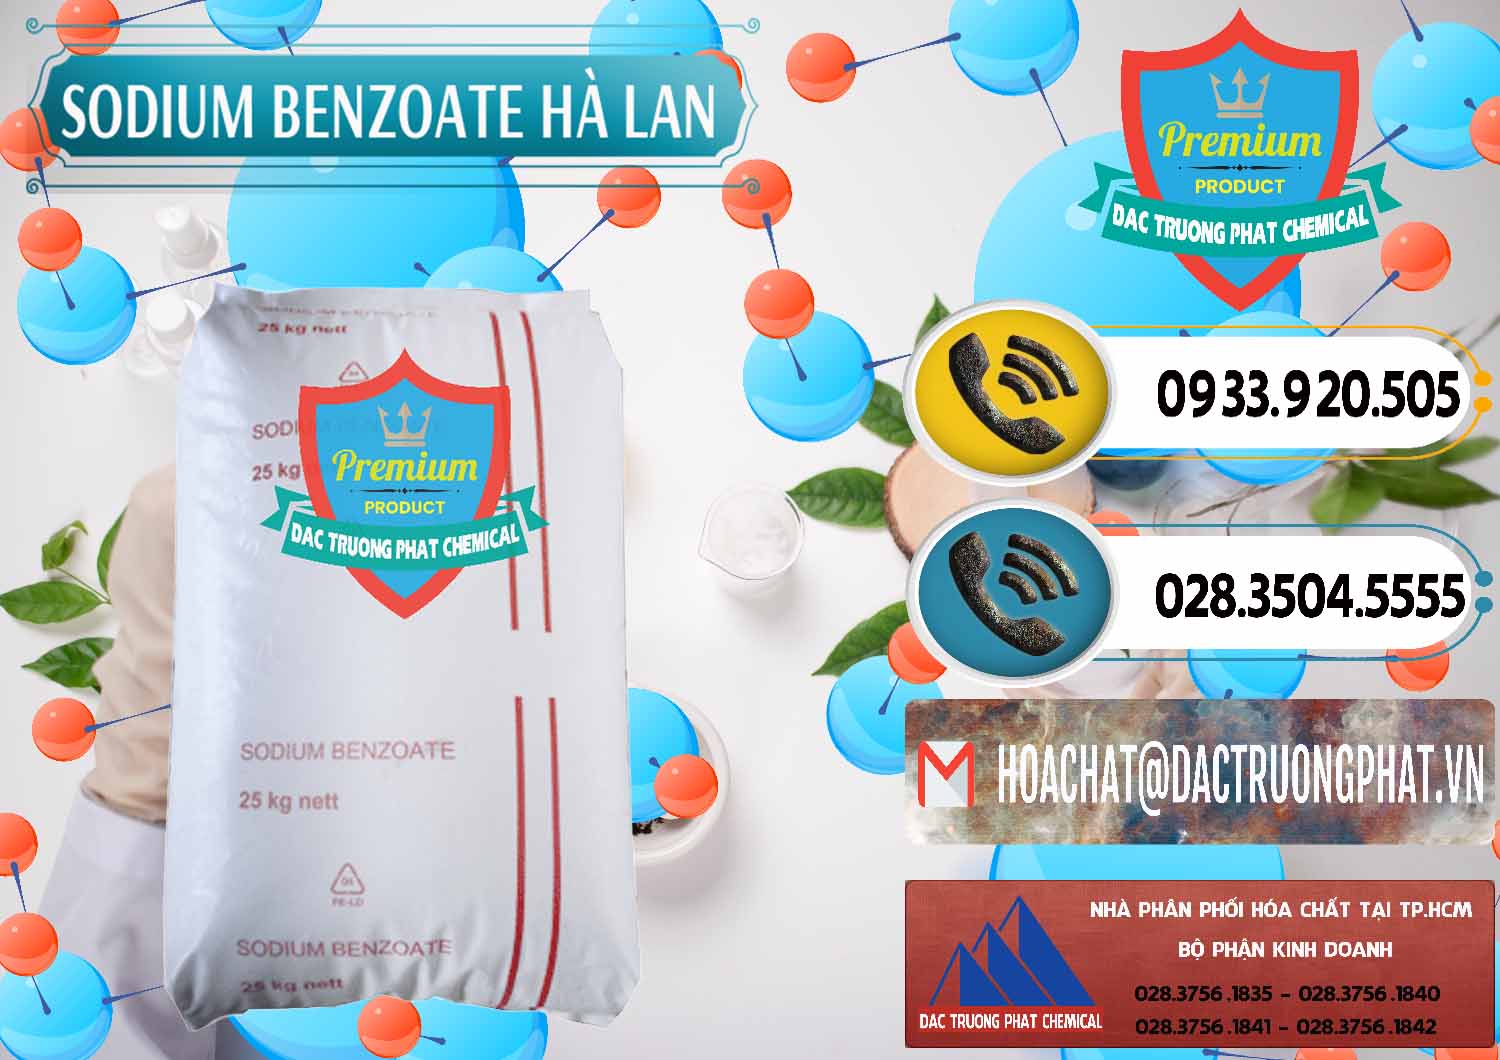 Đơn vị kinh doanh - bán Sodium Benzoate - Mốc Bột Chữ Cam Hà Lan Netherlands - 0360 - Công ty chuyên kinh doanh và phân phối hóa chất tại TP.HCM - hoachatdetnhuom.vn